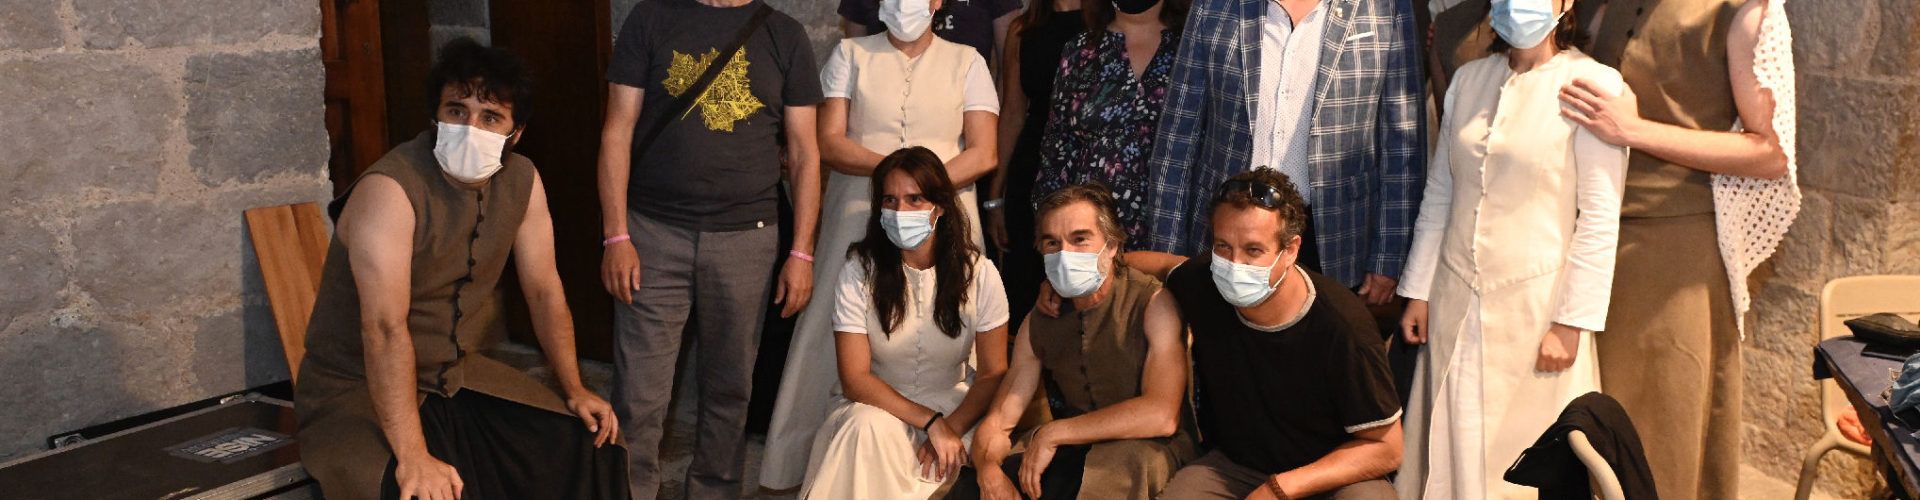 Nise, la tragedia de Inés Castro’, emociona en la segona jornada del Festival de Teatre Clàssic de Peníscola